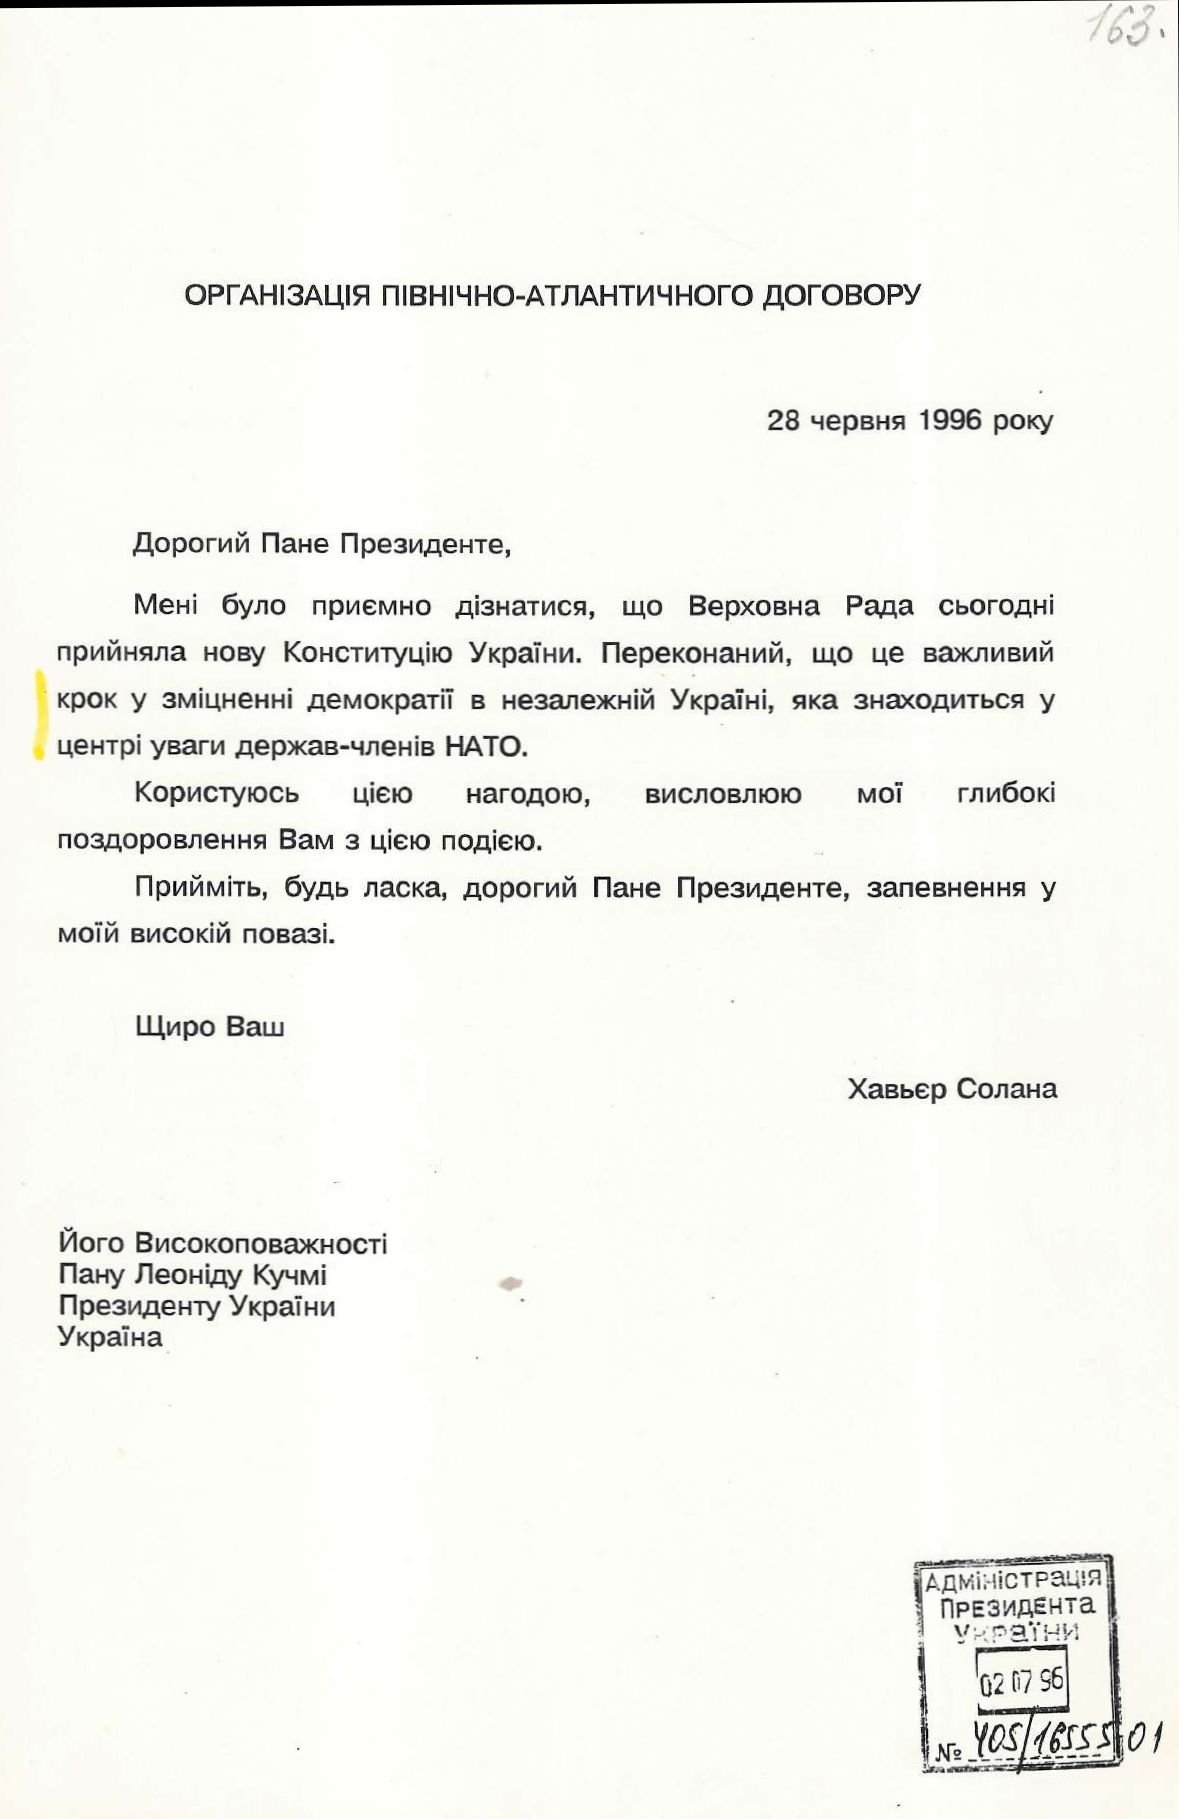 Привітання від Організації Північно-Атлантичного договору Президента України з прийняттям Конституції України. 28 червня 1996 р.